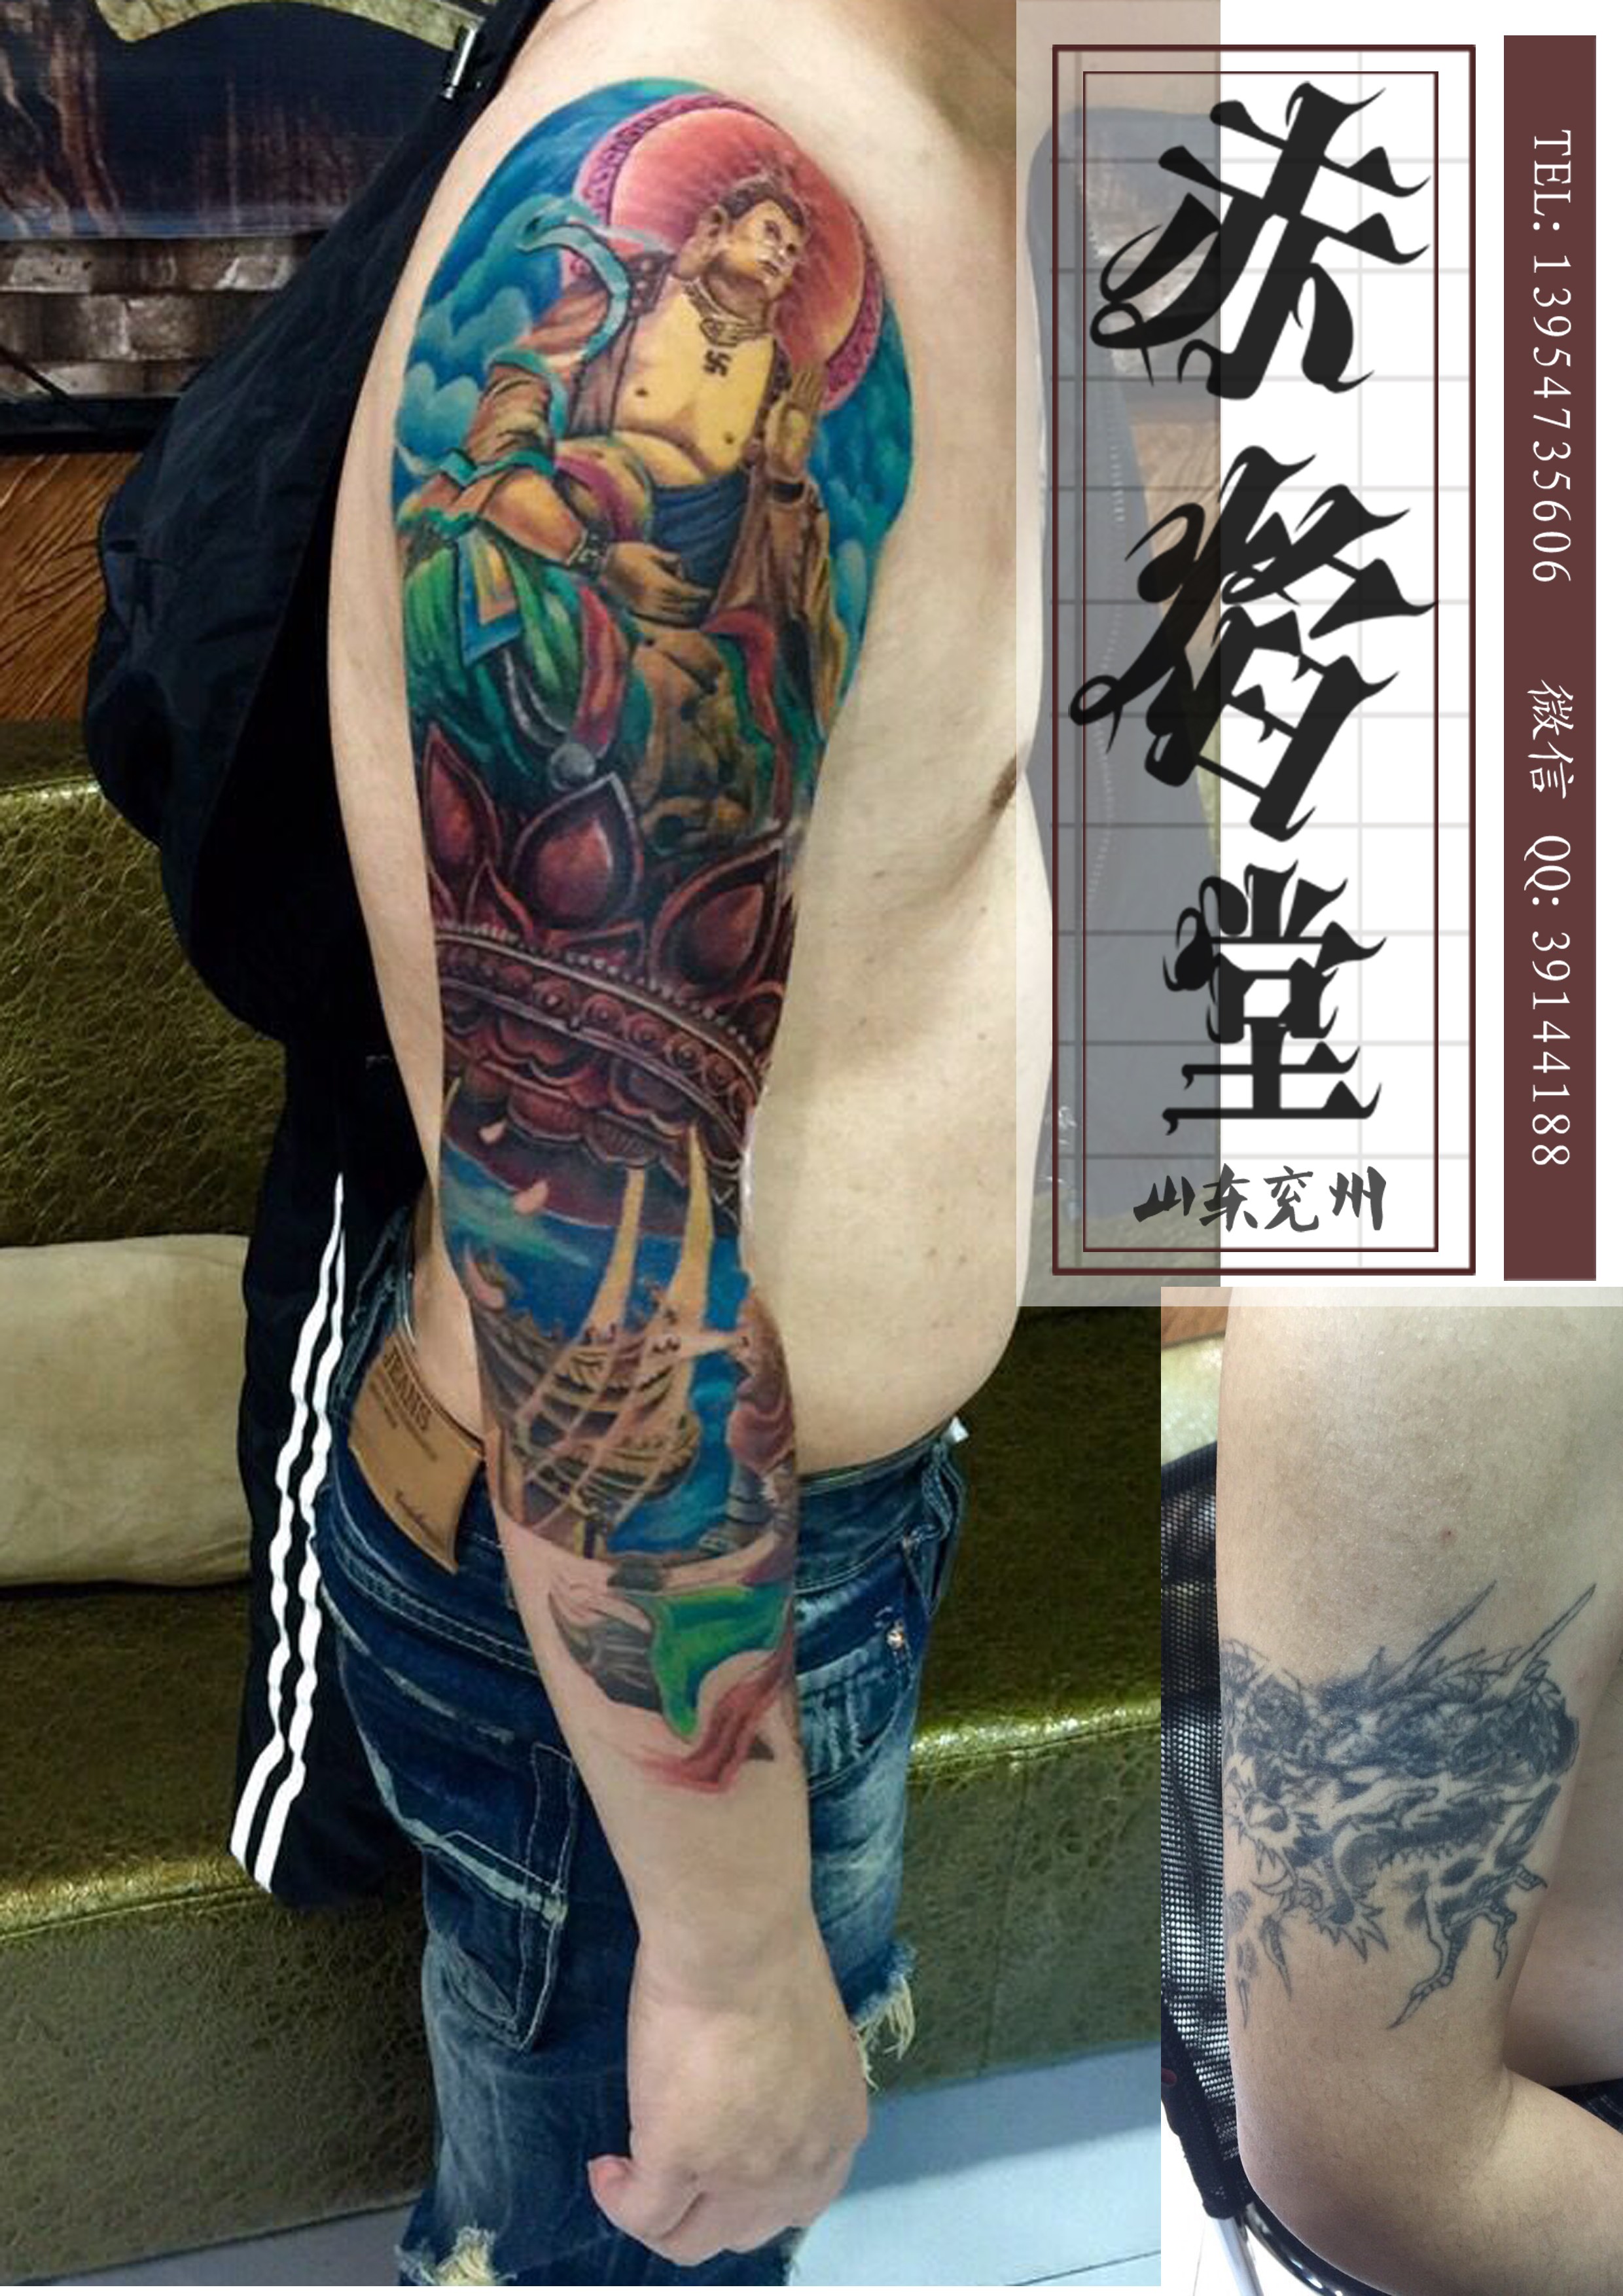 花臂纹身 专业修改纹身 设计纹身 赤焰堂纹身店